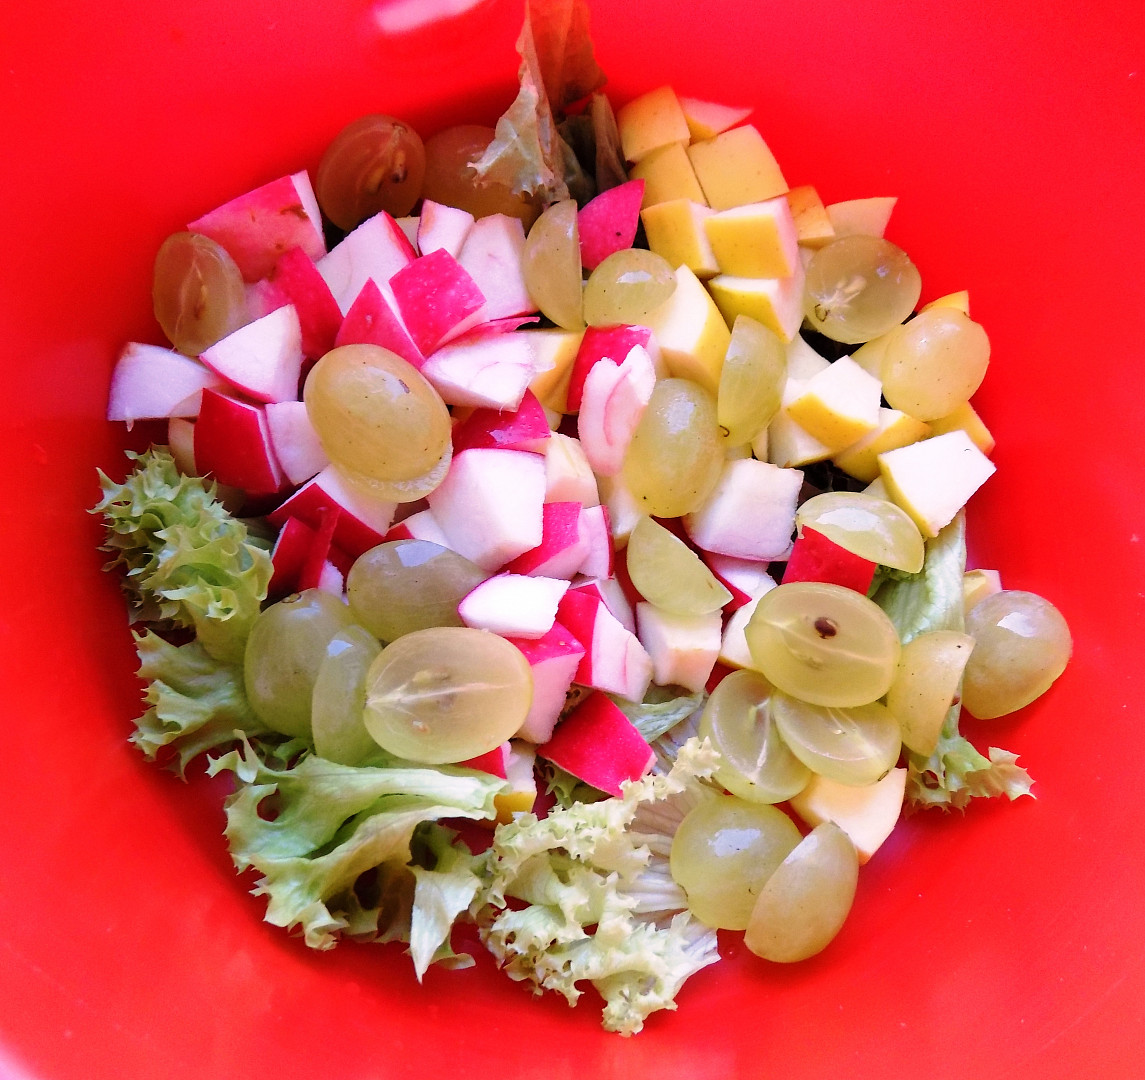 Ovocný salát s jogurtovým dresinkem